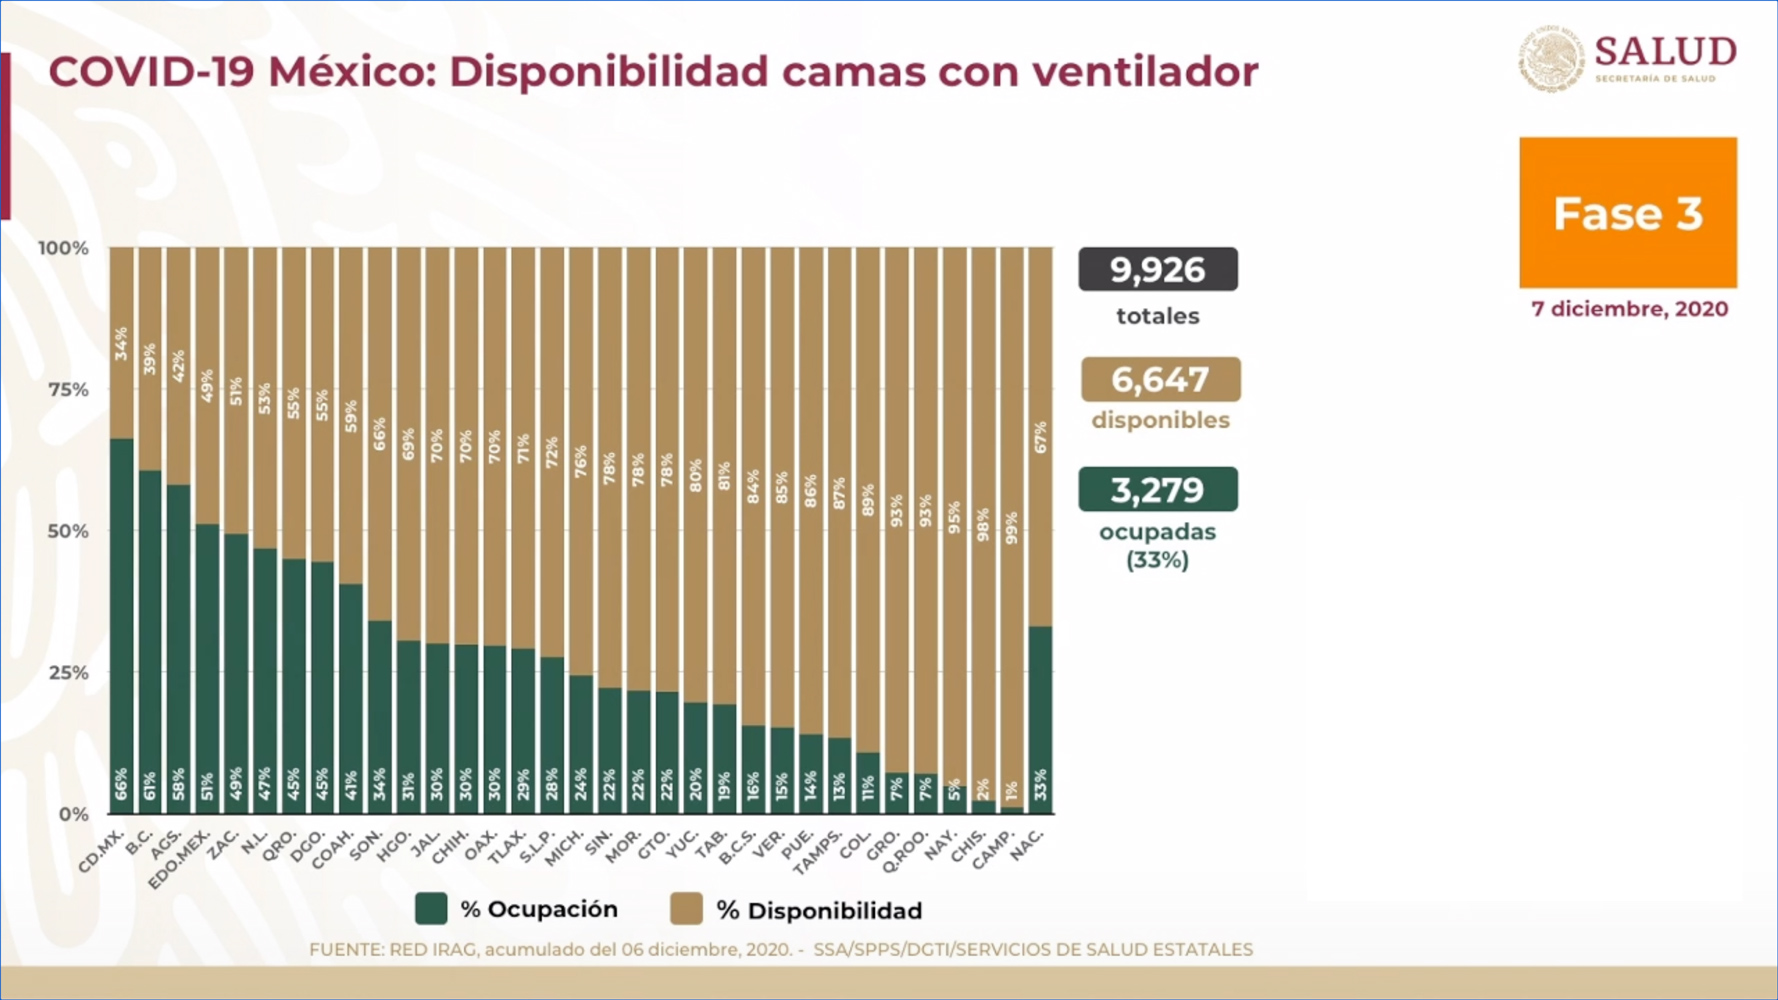 Nayarit, Chiapas y Campeche son los tres estados de la República con más disponibilidad en camas para atender a pacientes graves por COVID-19 (Foto: Ssa)